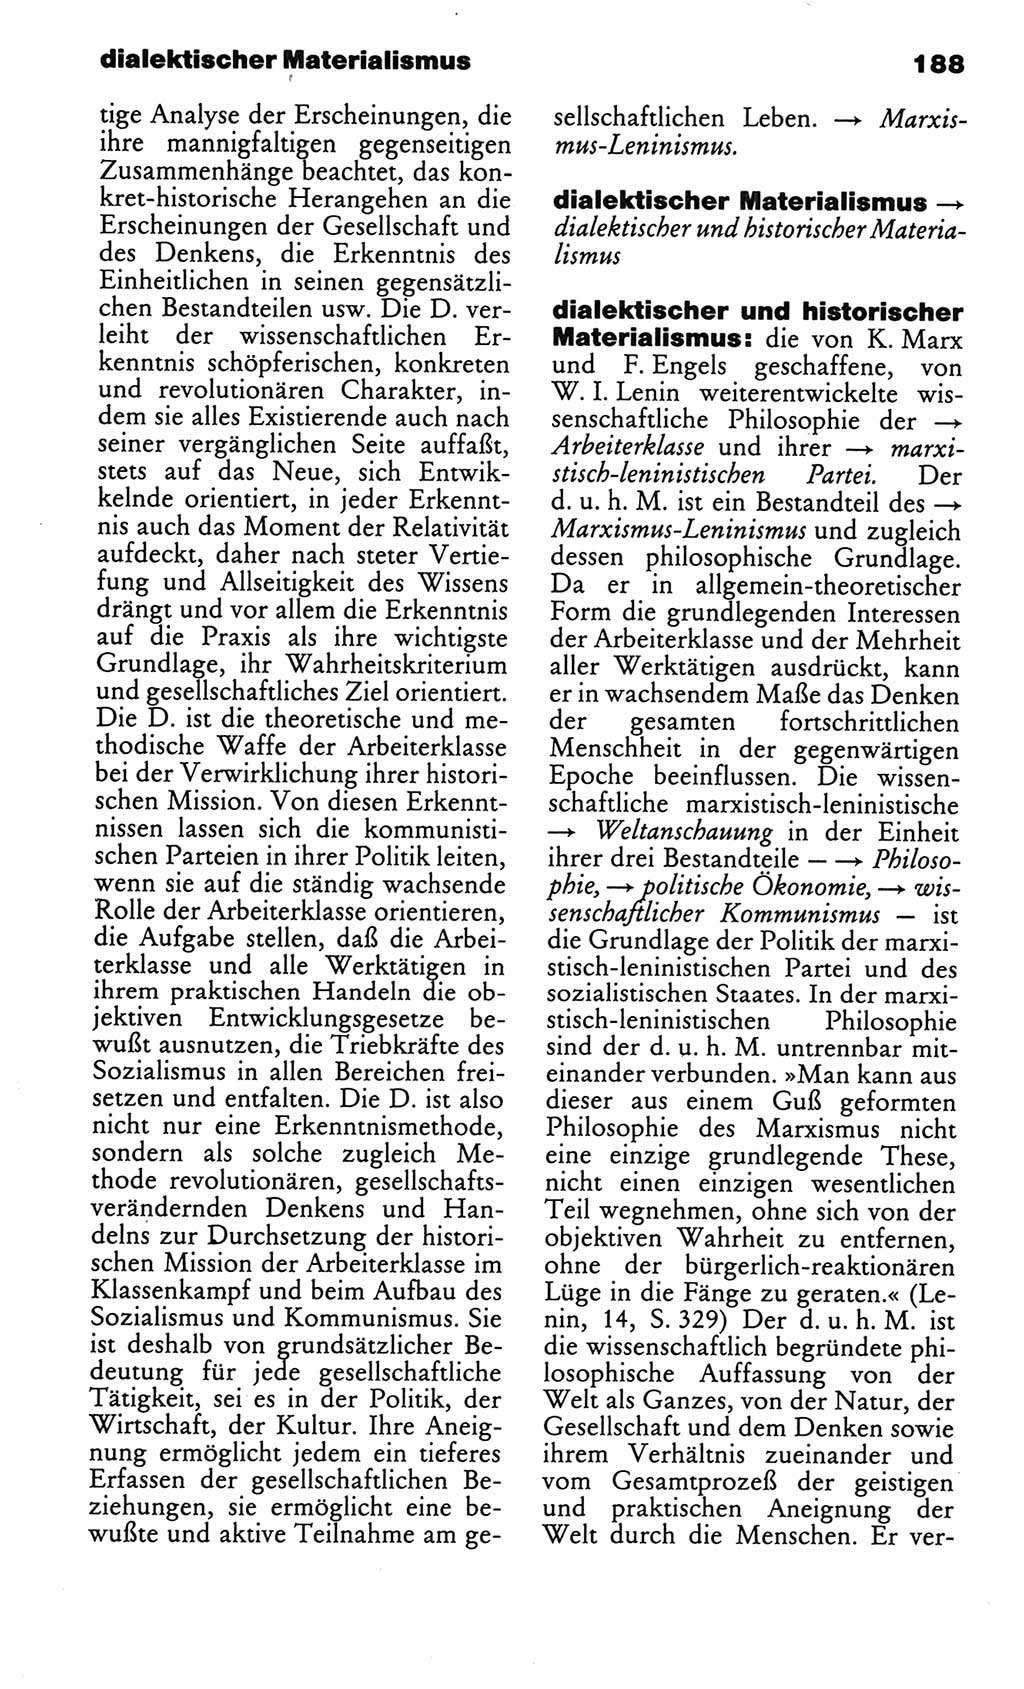 Kleines politisches Wörterbuch [Deutsche Demokratische Republik (DDR)] 1986, Seite 188 (Kl. pol. Wb. DDR 1986, S. 188)